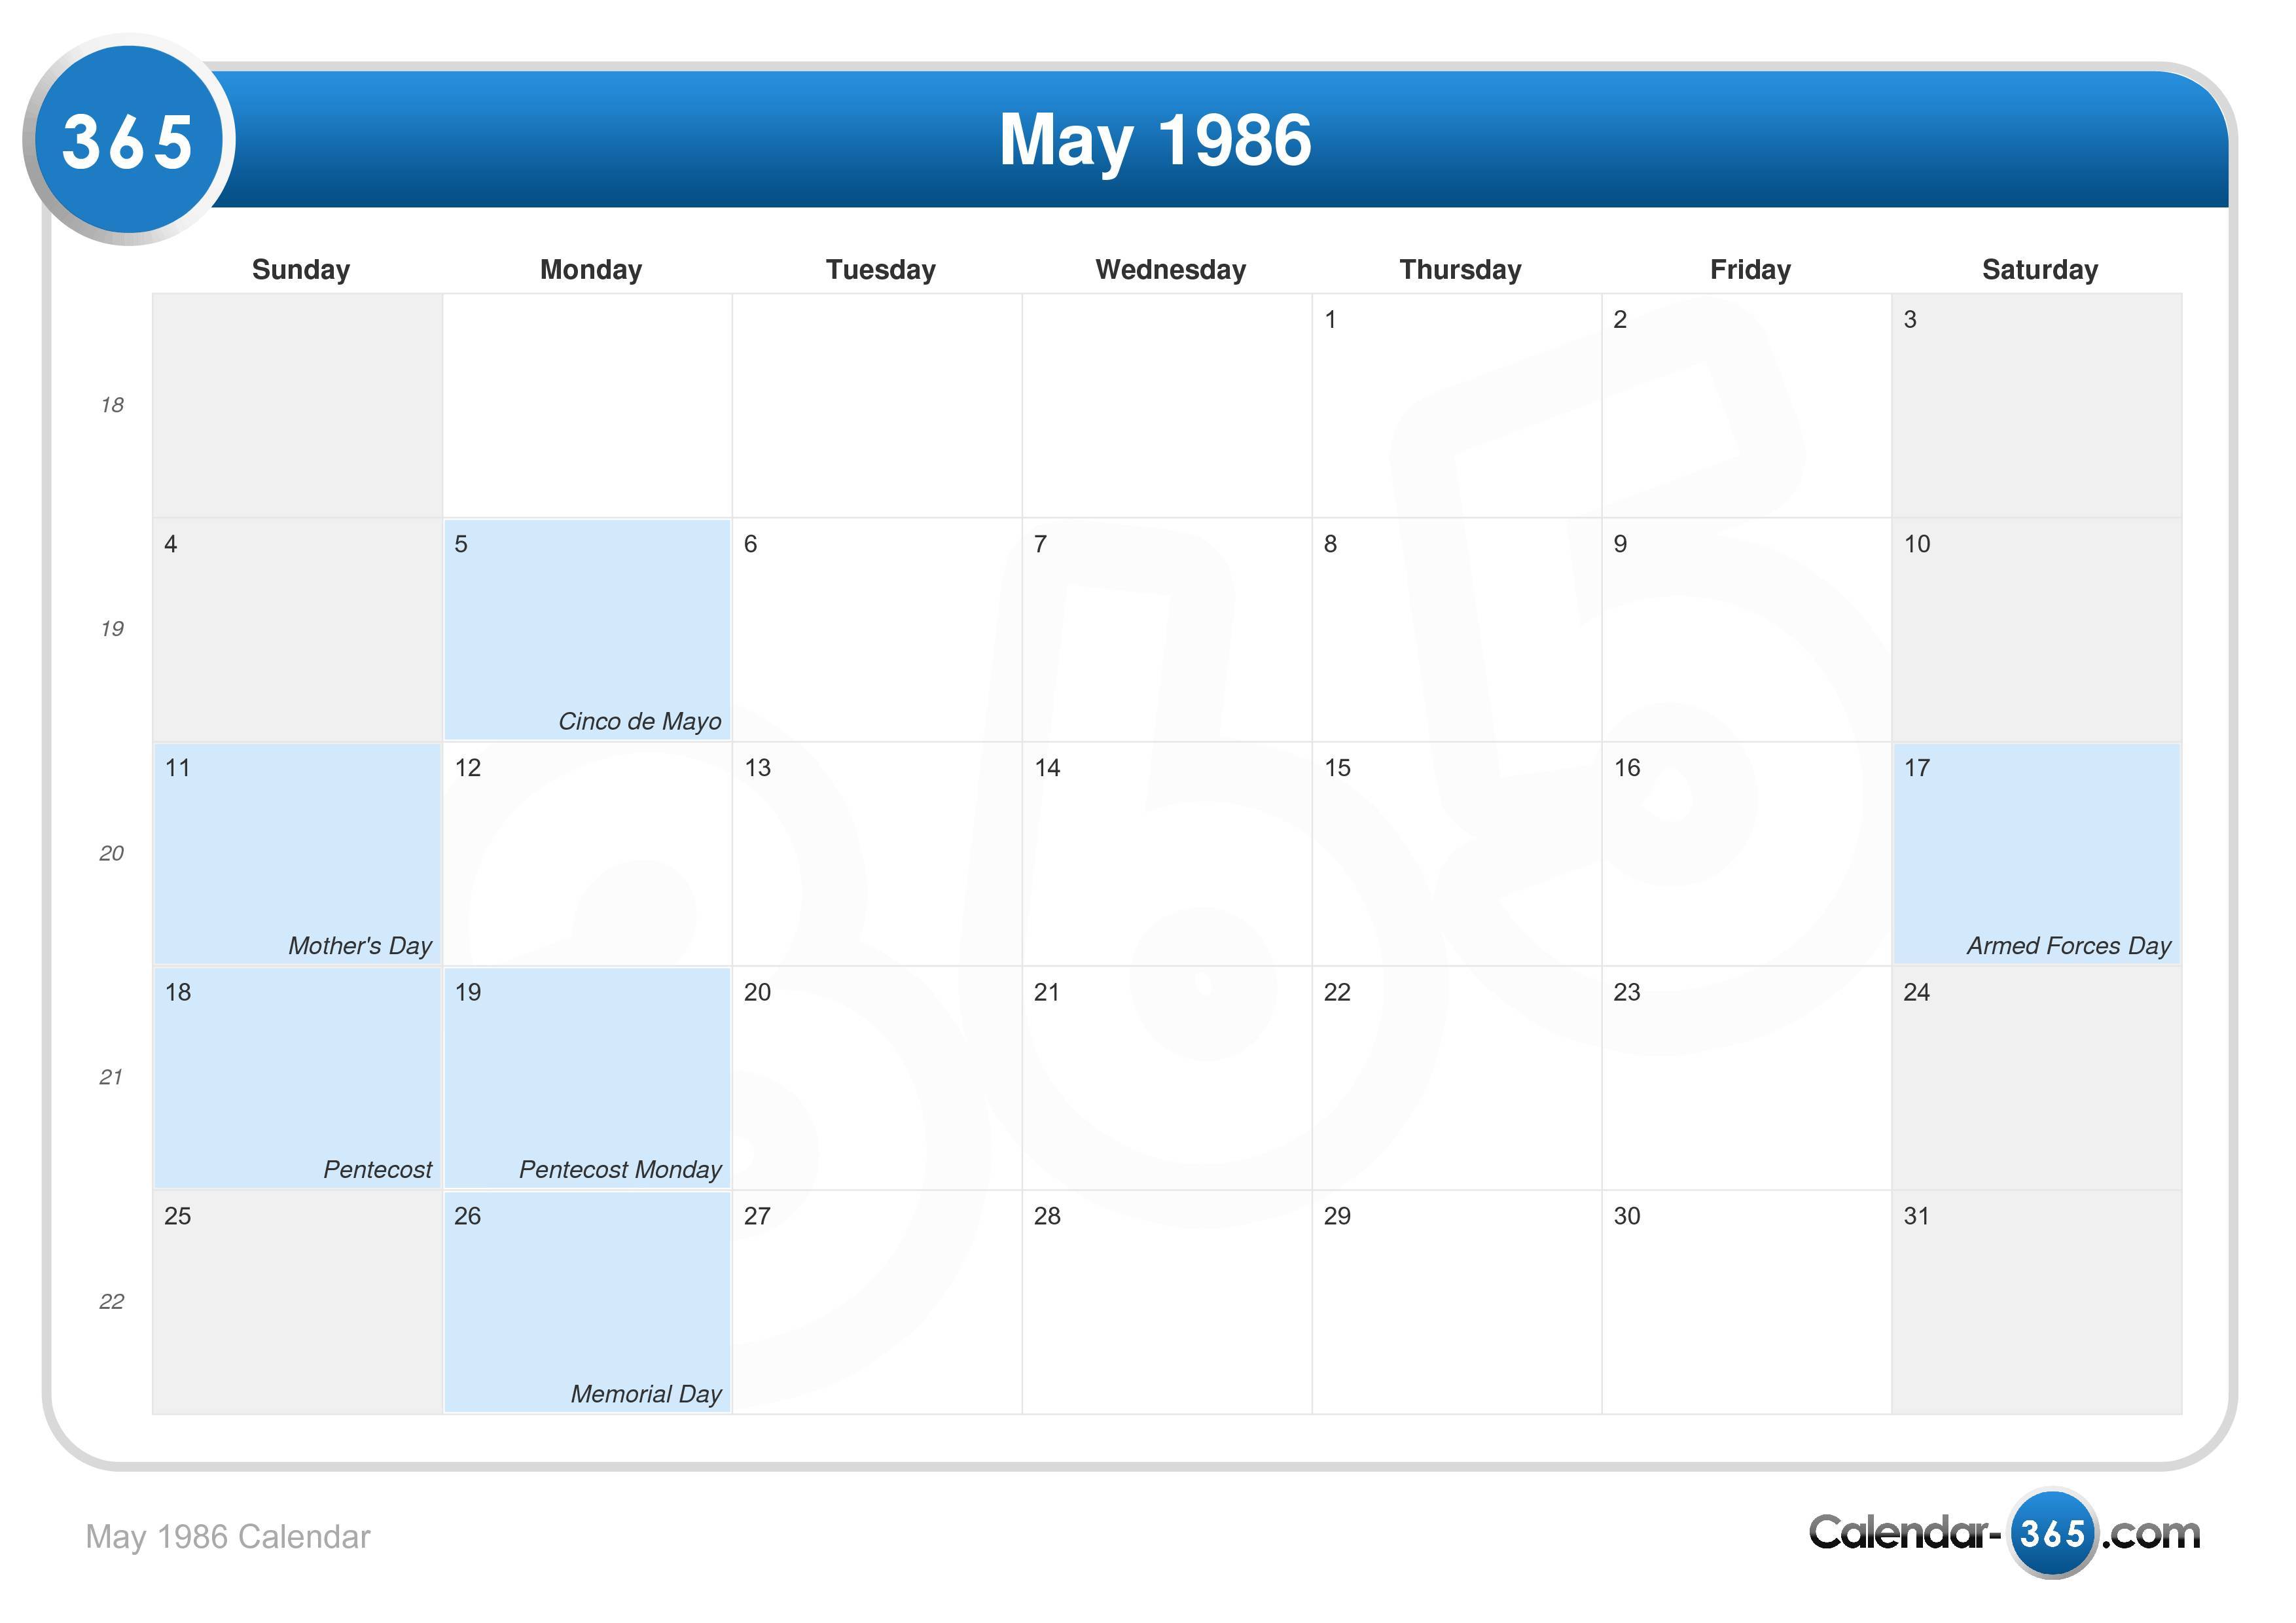 May 1986 Calendar